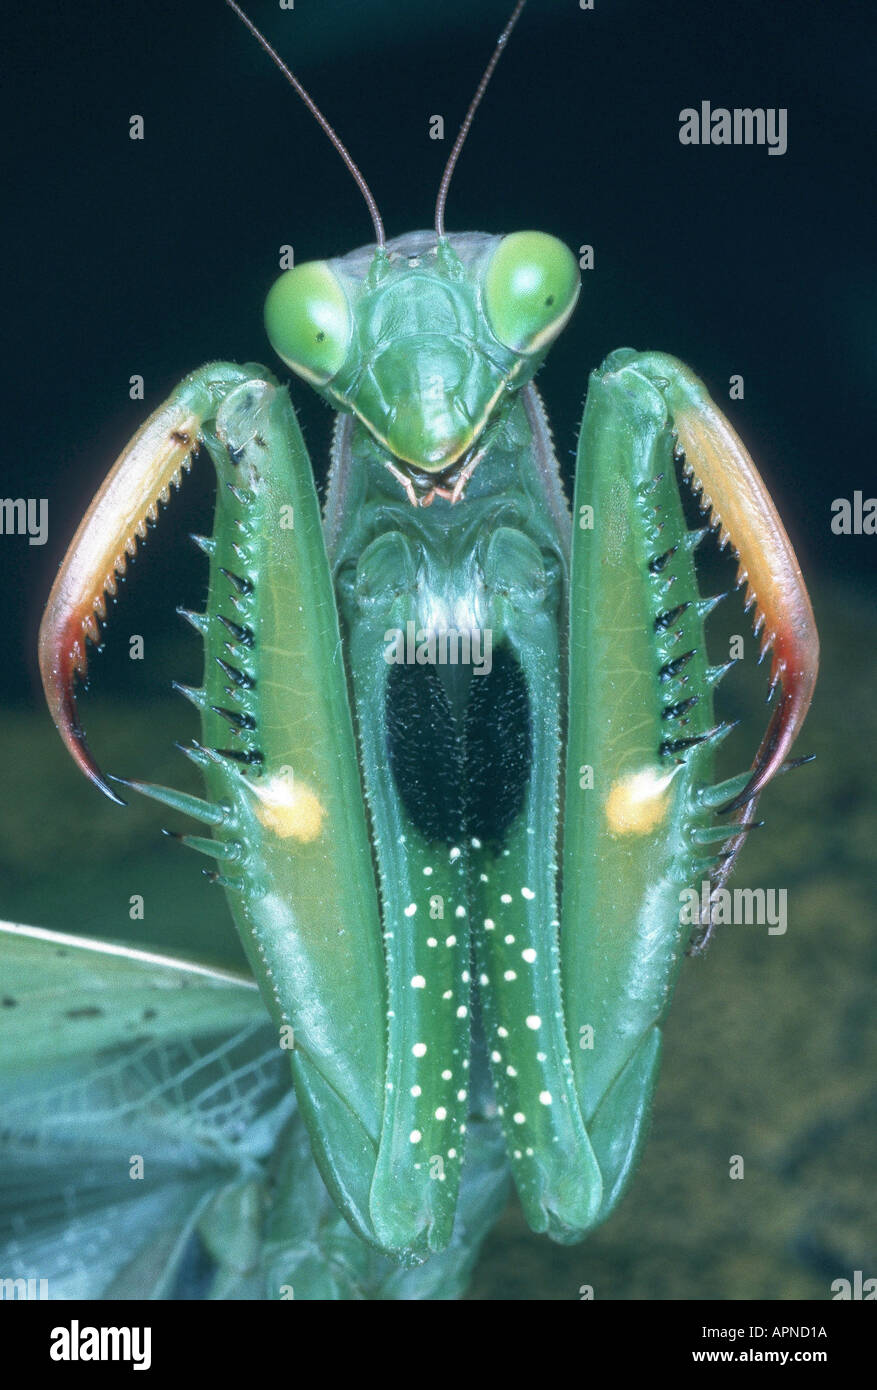 European preying mantis (Mantis religiosa), threatening posture Stock Photo